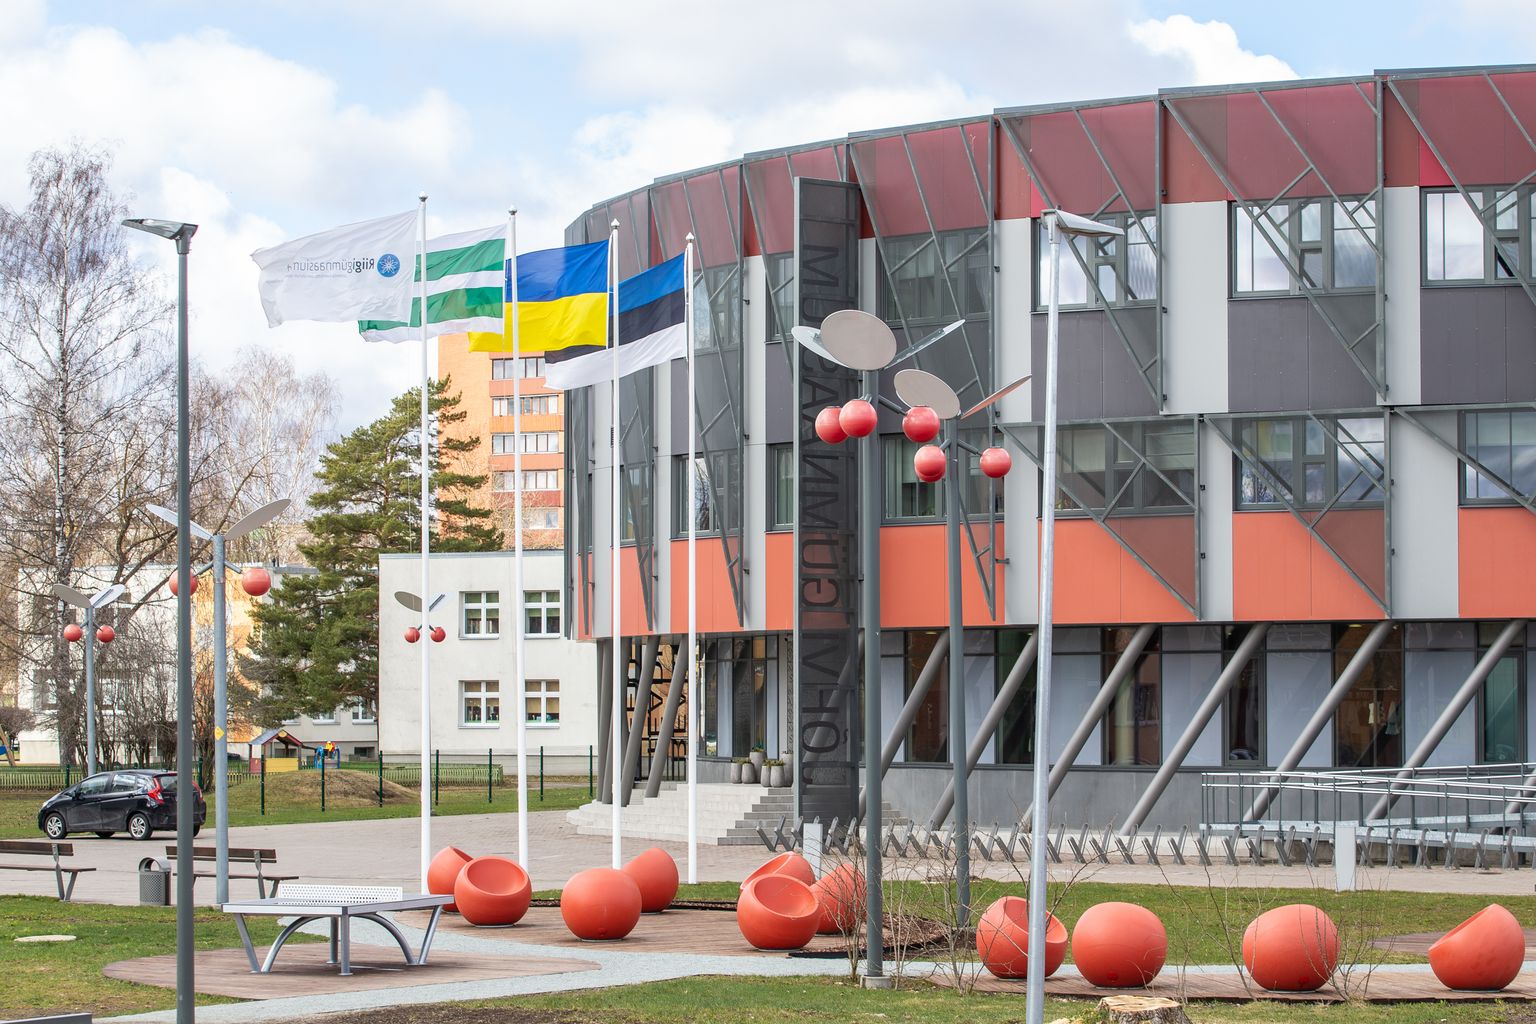 Jõhvi gümnaasium on valmis eestikeelsele õppele üle minema. Direktor Tatjana Ait ütles, et ka matemaatika õppimine eesti keeles ei valmista õpilastele enam hirmu.